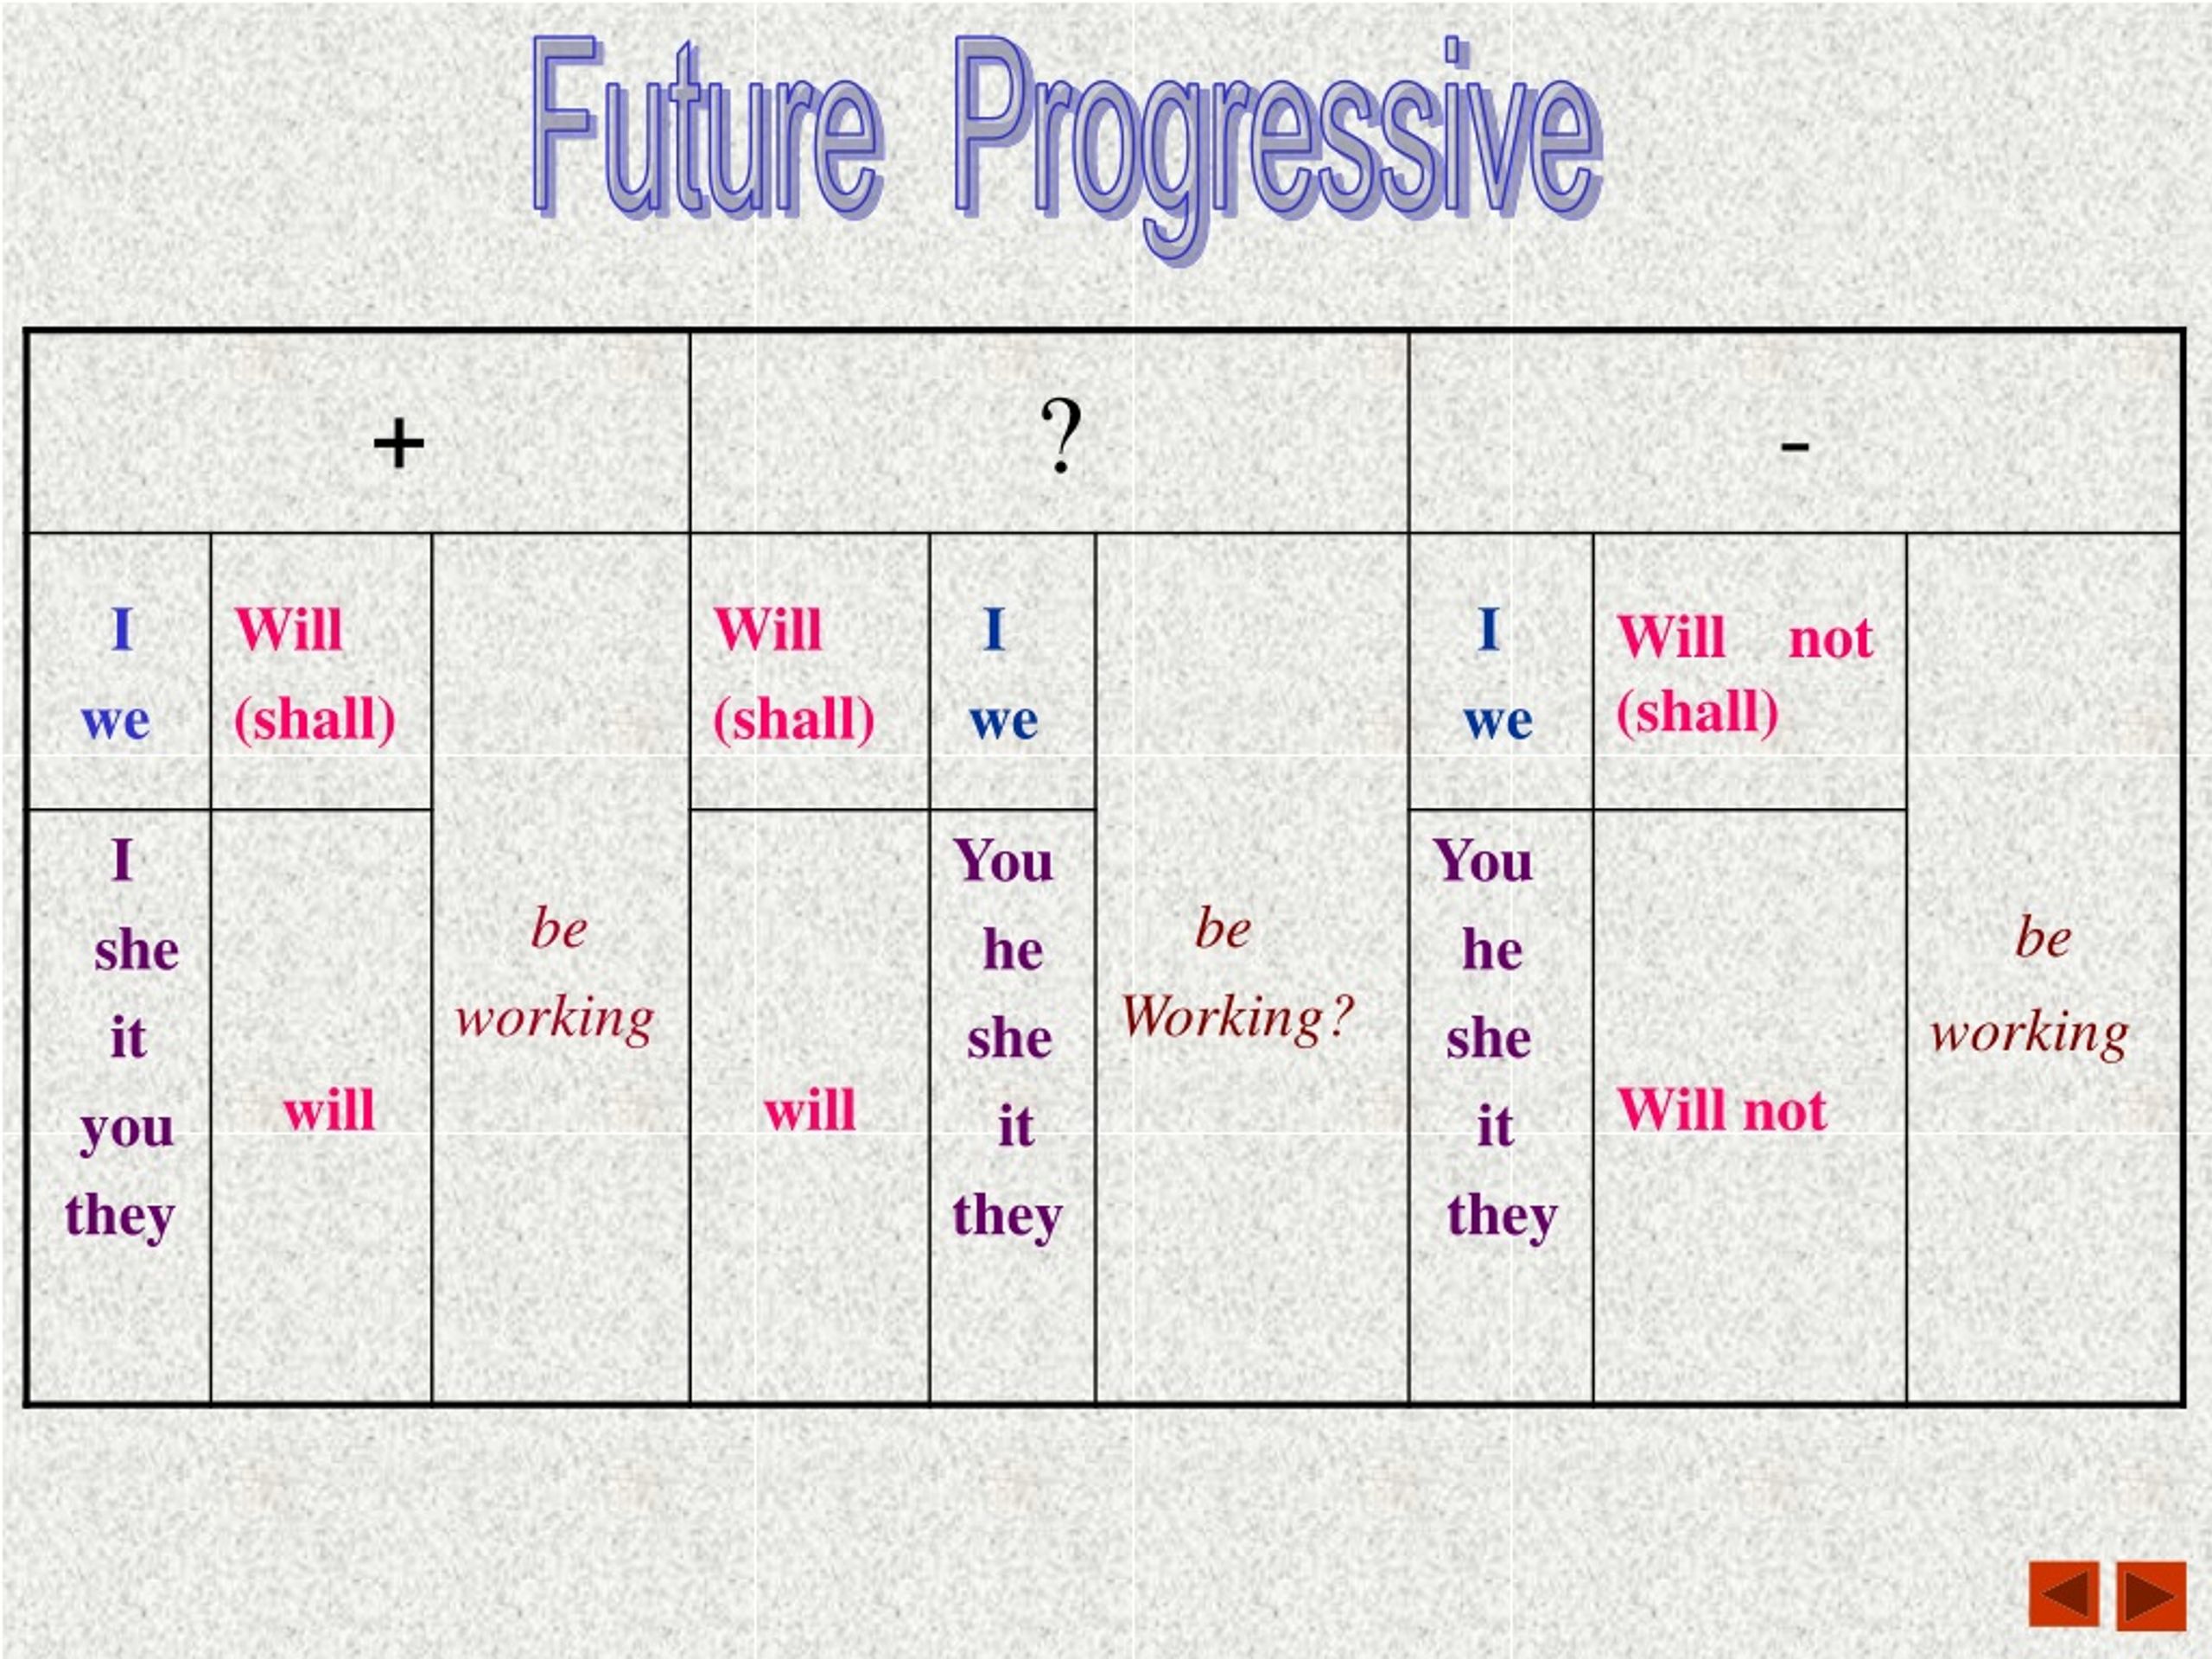 Английский язык будущая форма. Future Continuous таблица. Фьюче прогрессив в английском языке. Future Progressive в английском языке. Future Progressive таблица.